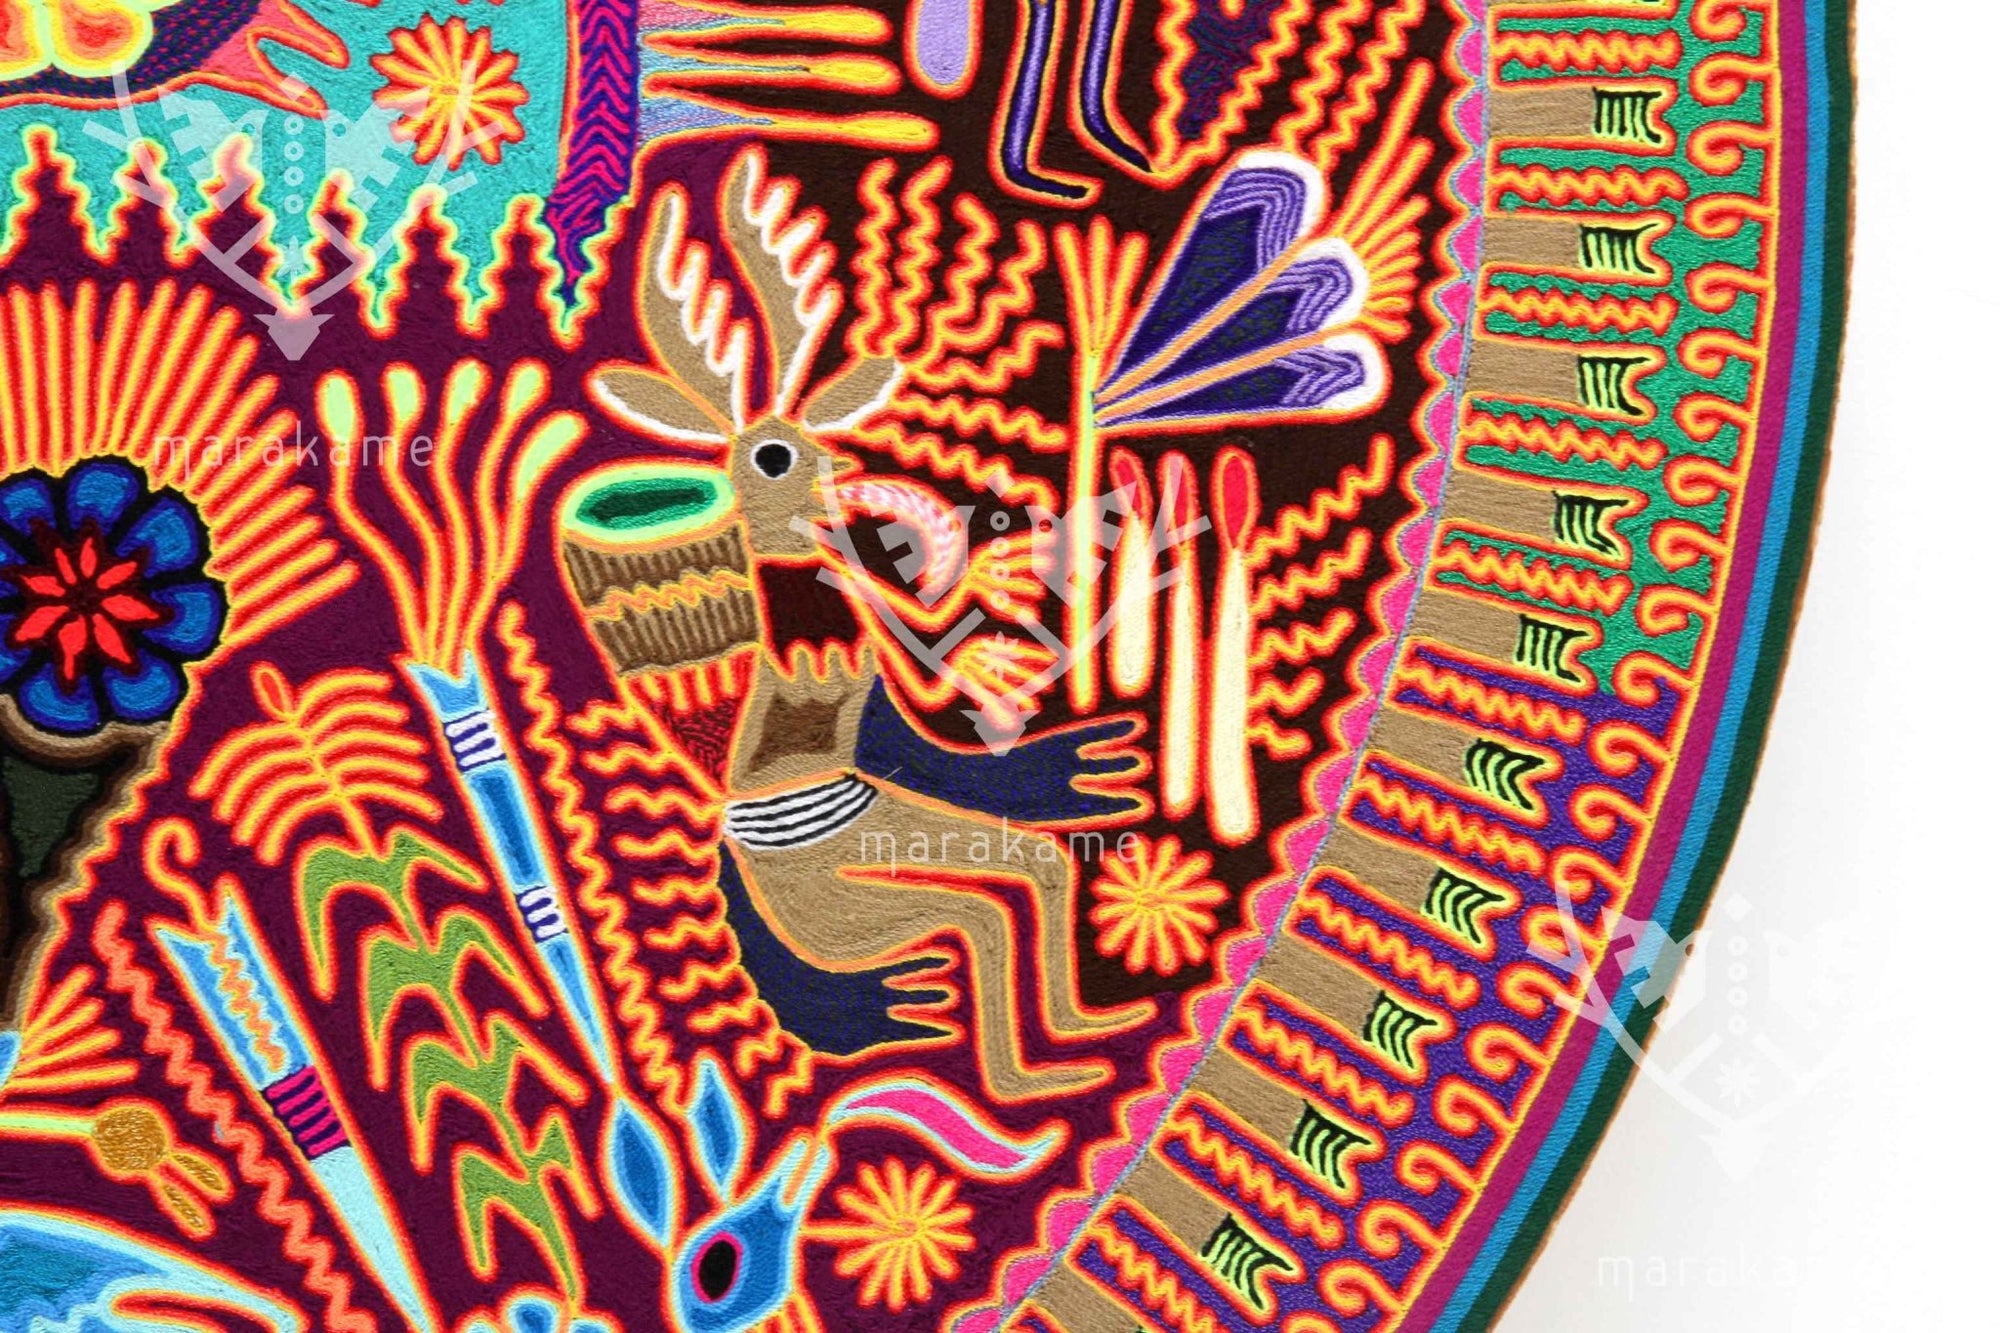 Nierika de Yarn Circle Huichol - The Blue Deer - 120 cm. - Huichol Art - Marakame